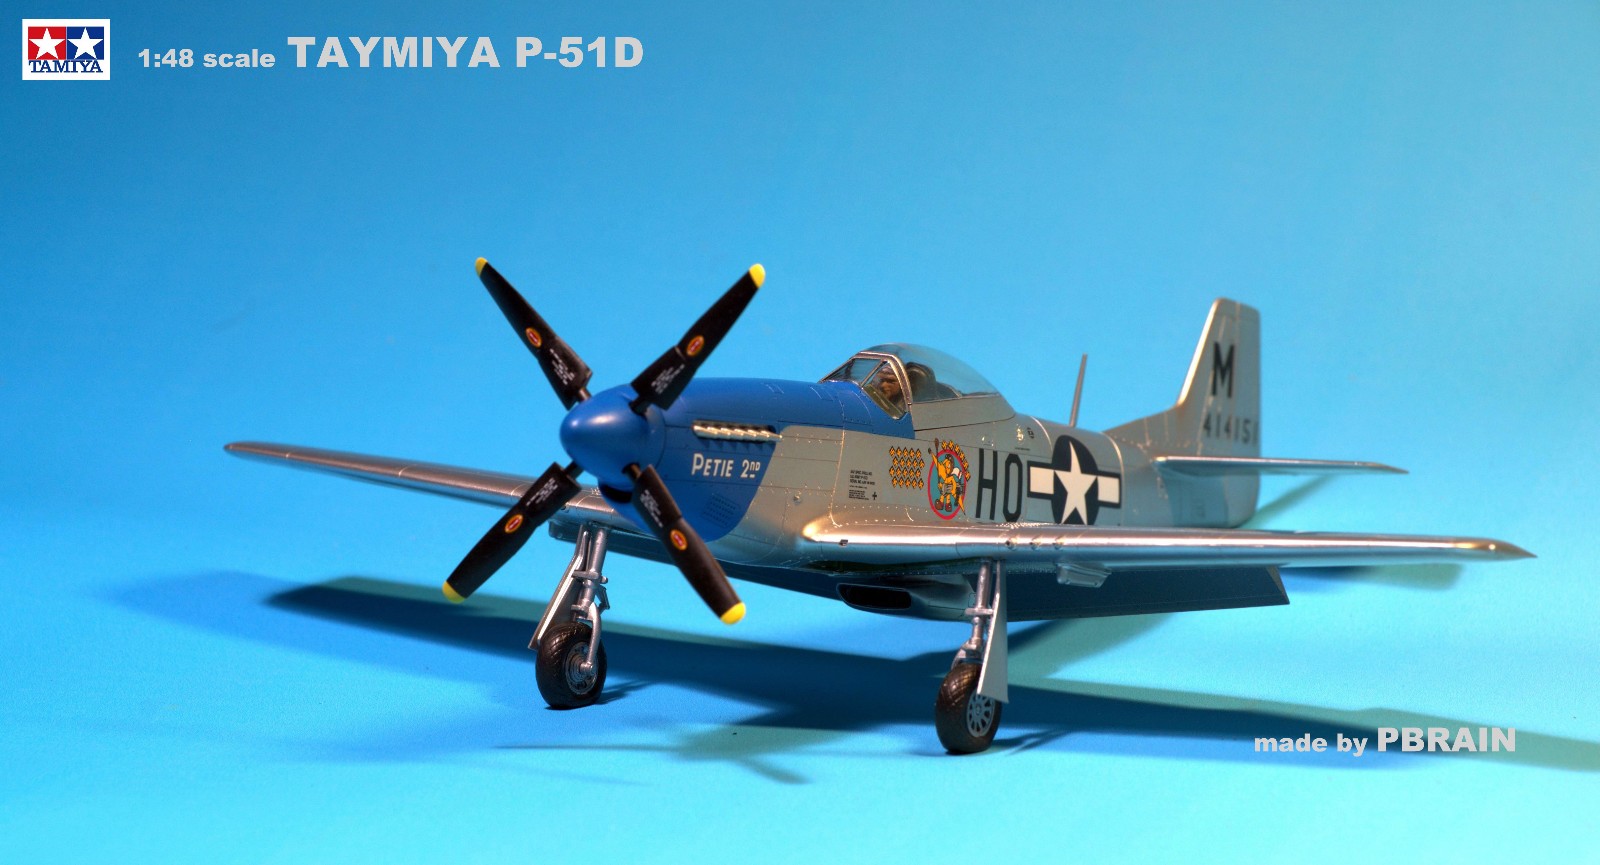 P-51D - hh.jpg